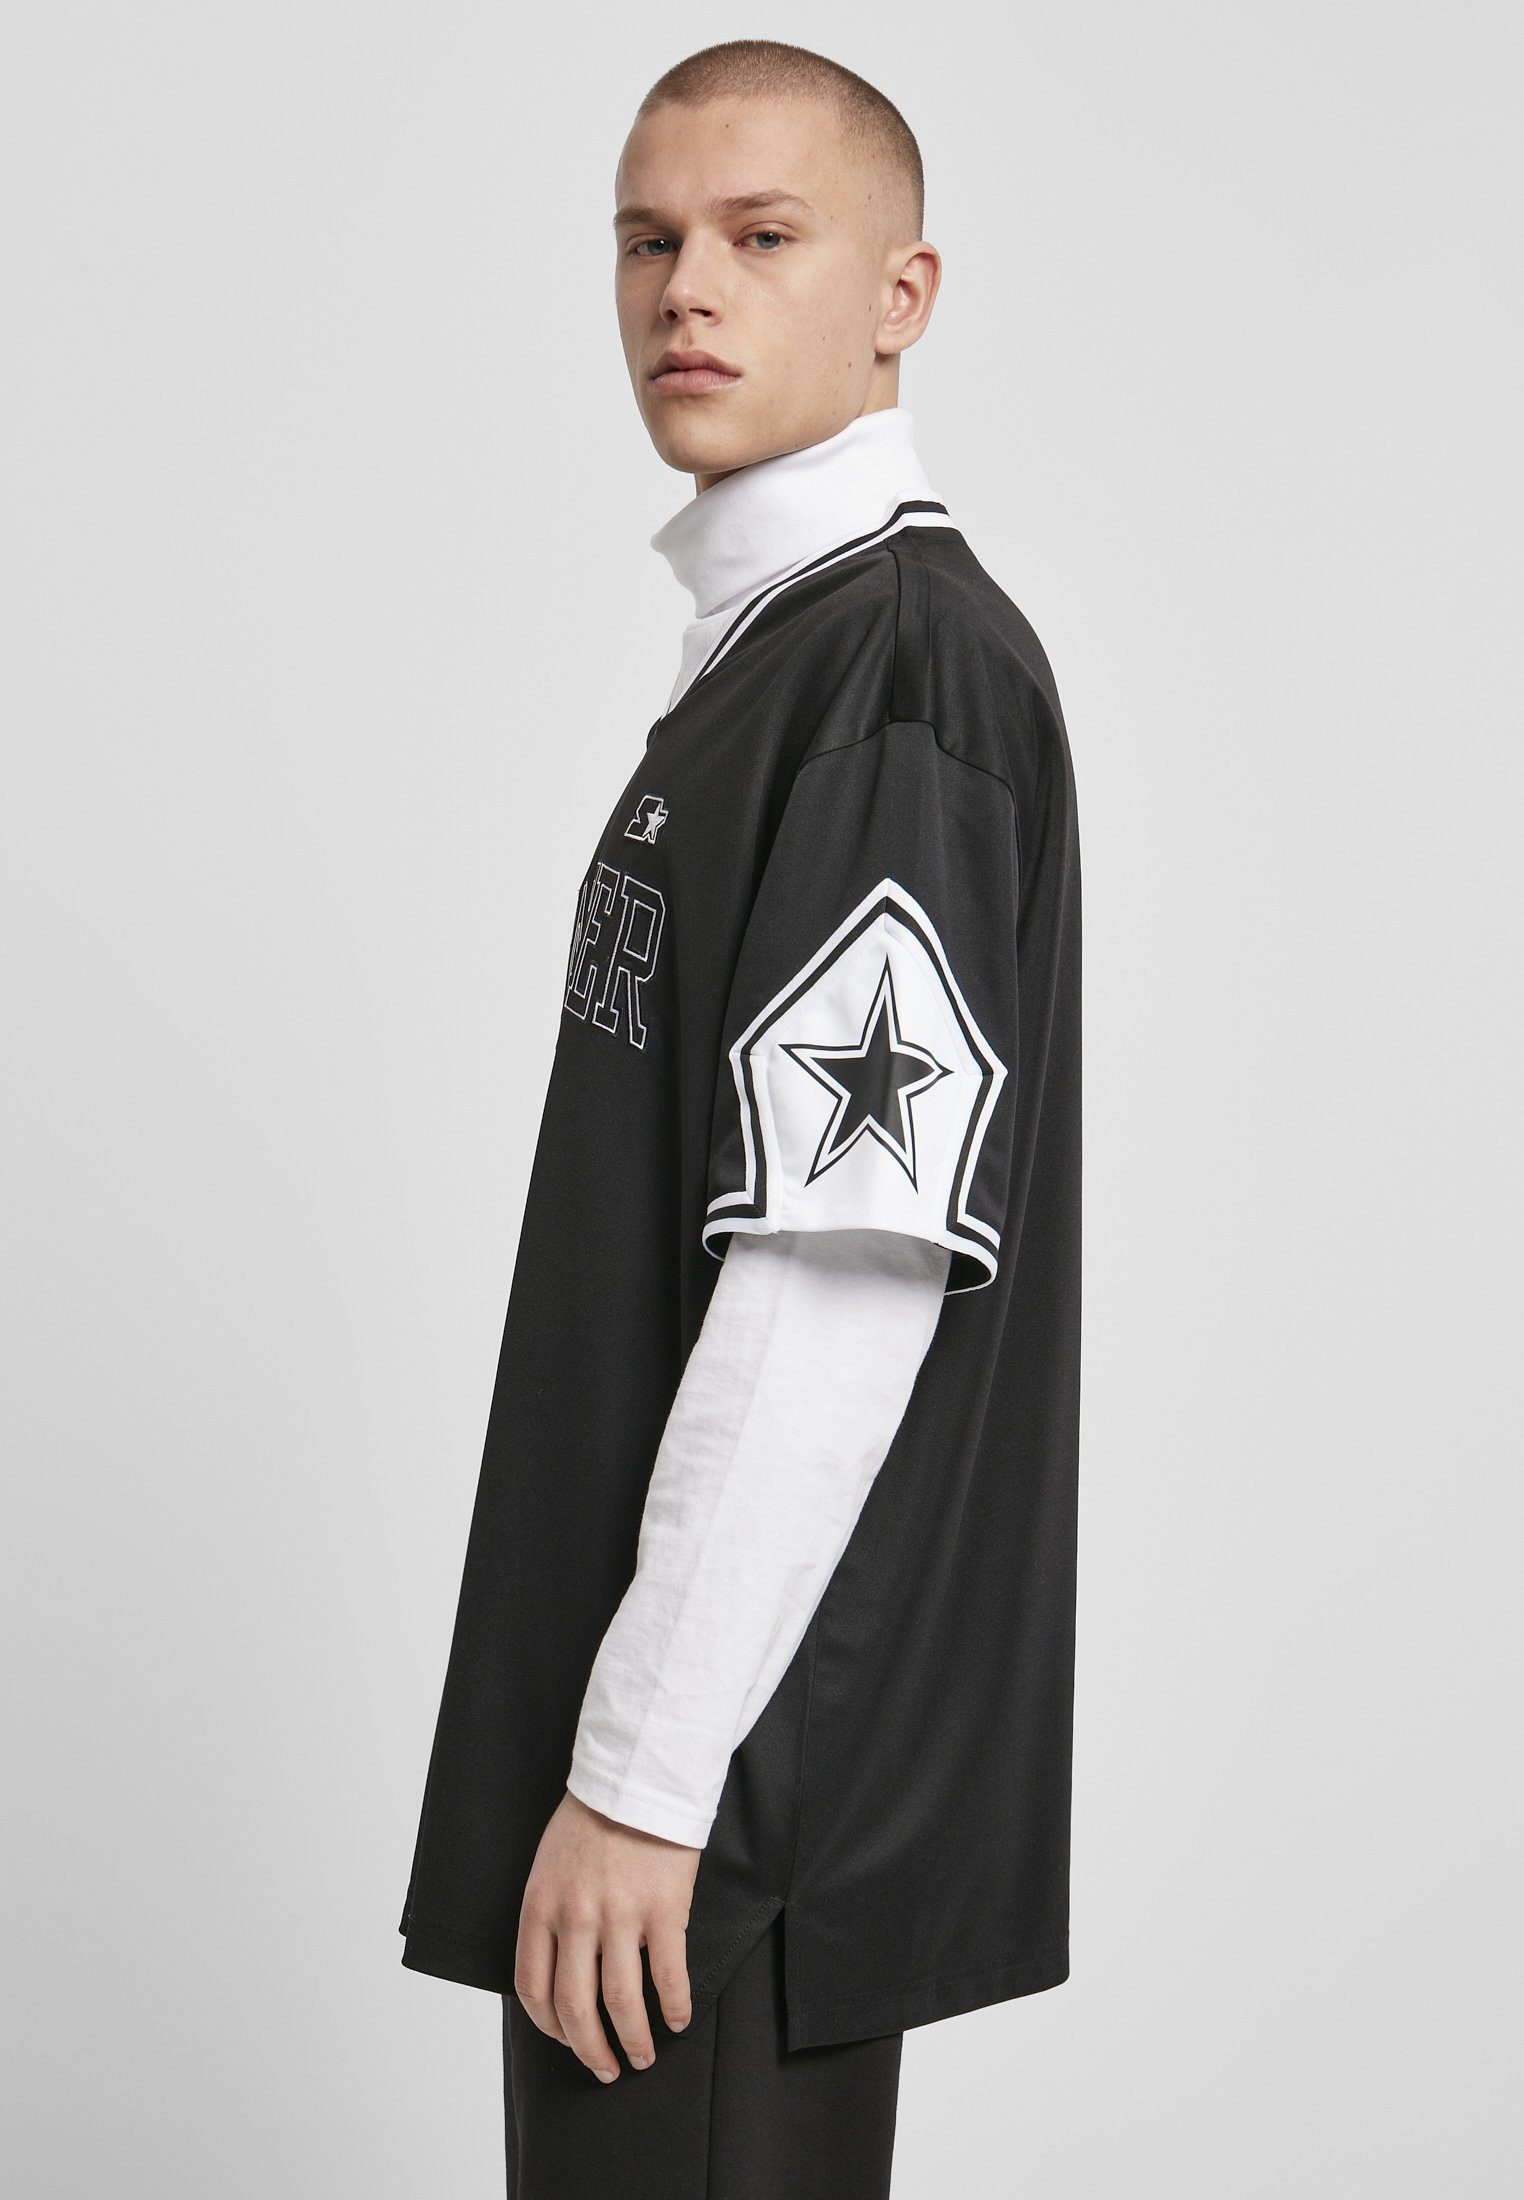 Starter Black Sleeve Herren (1-tlg) Label T-Shirt Sports Starter Star Tee